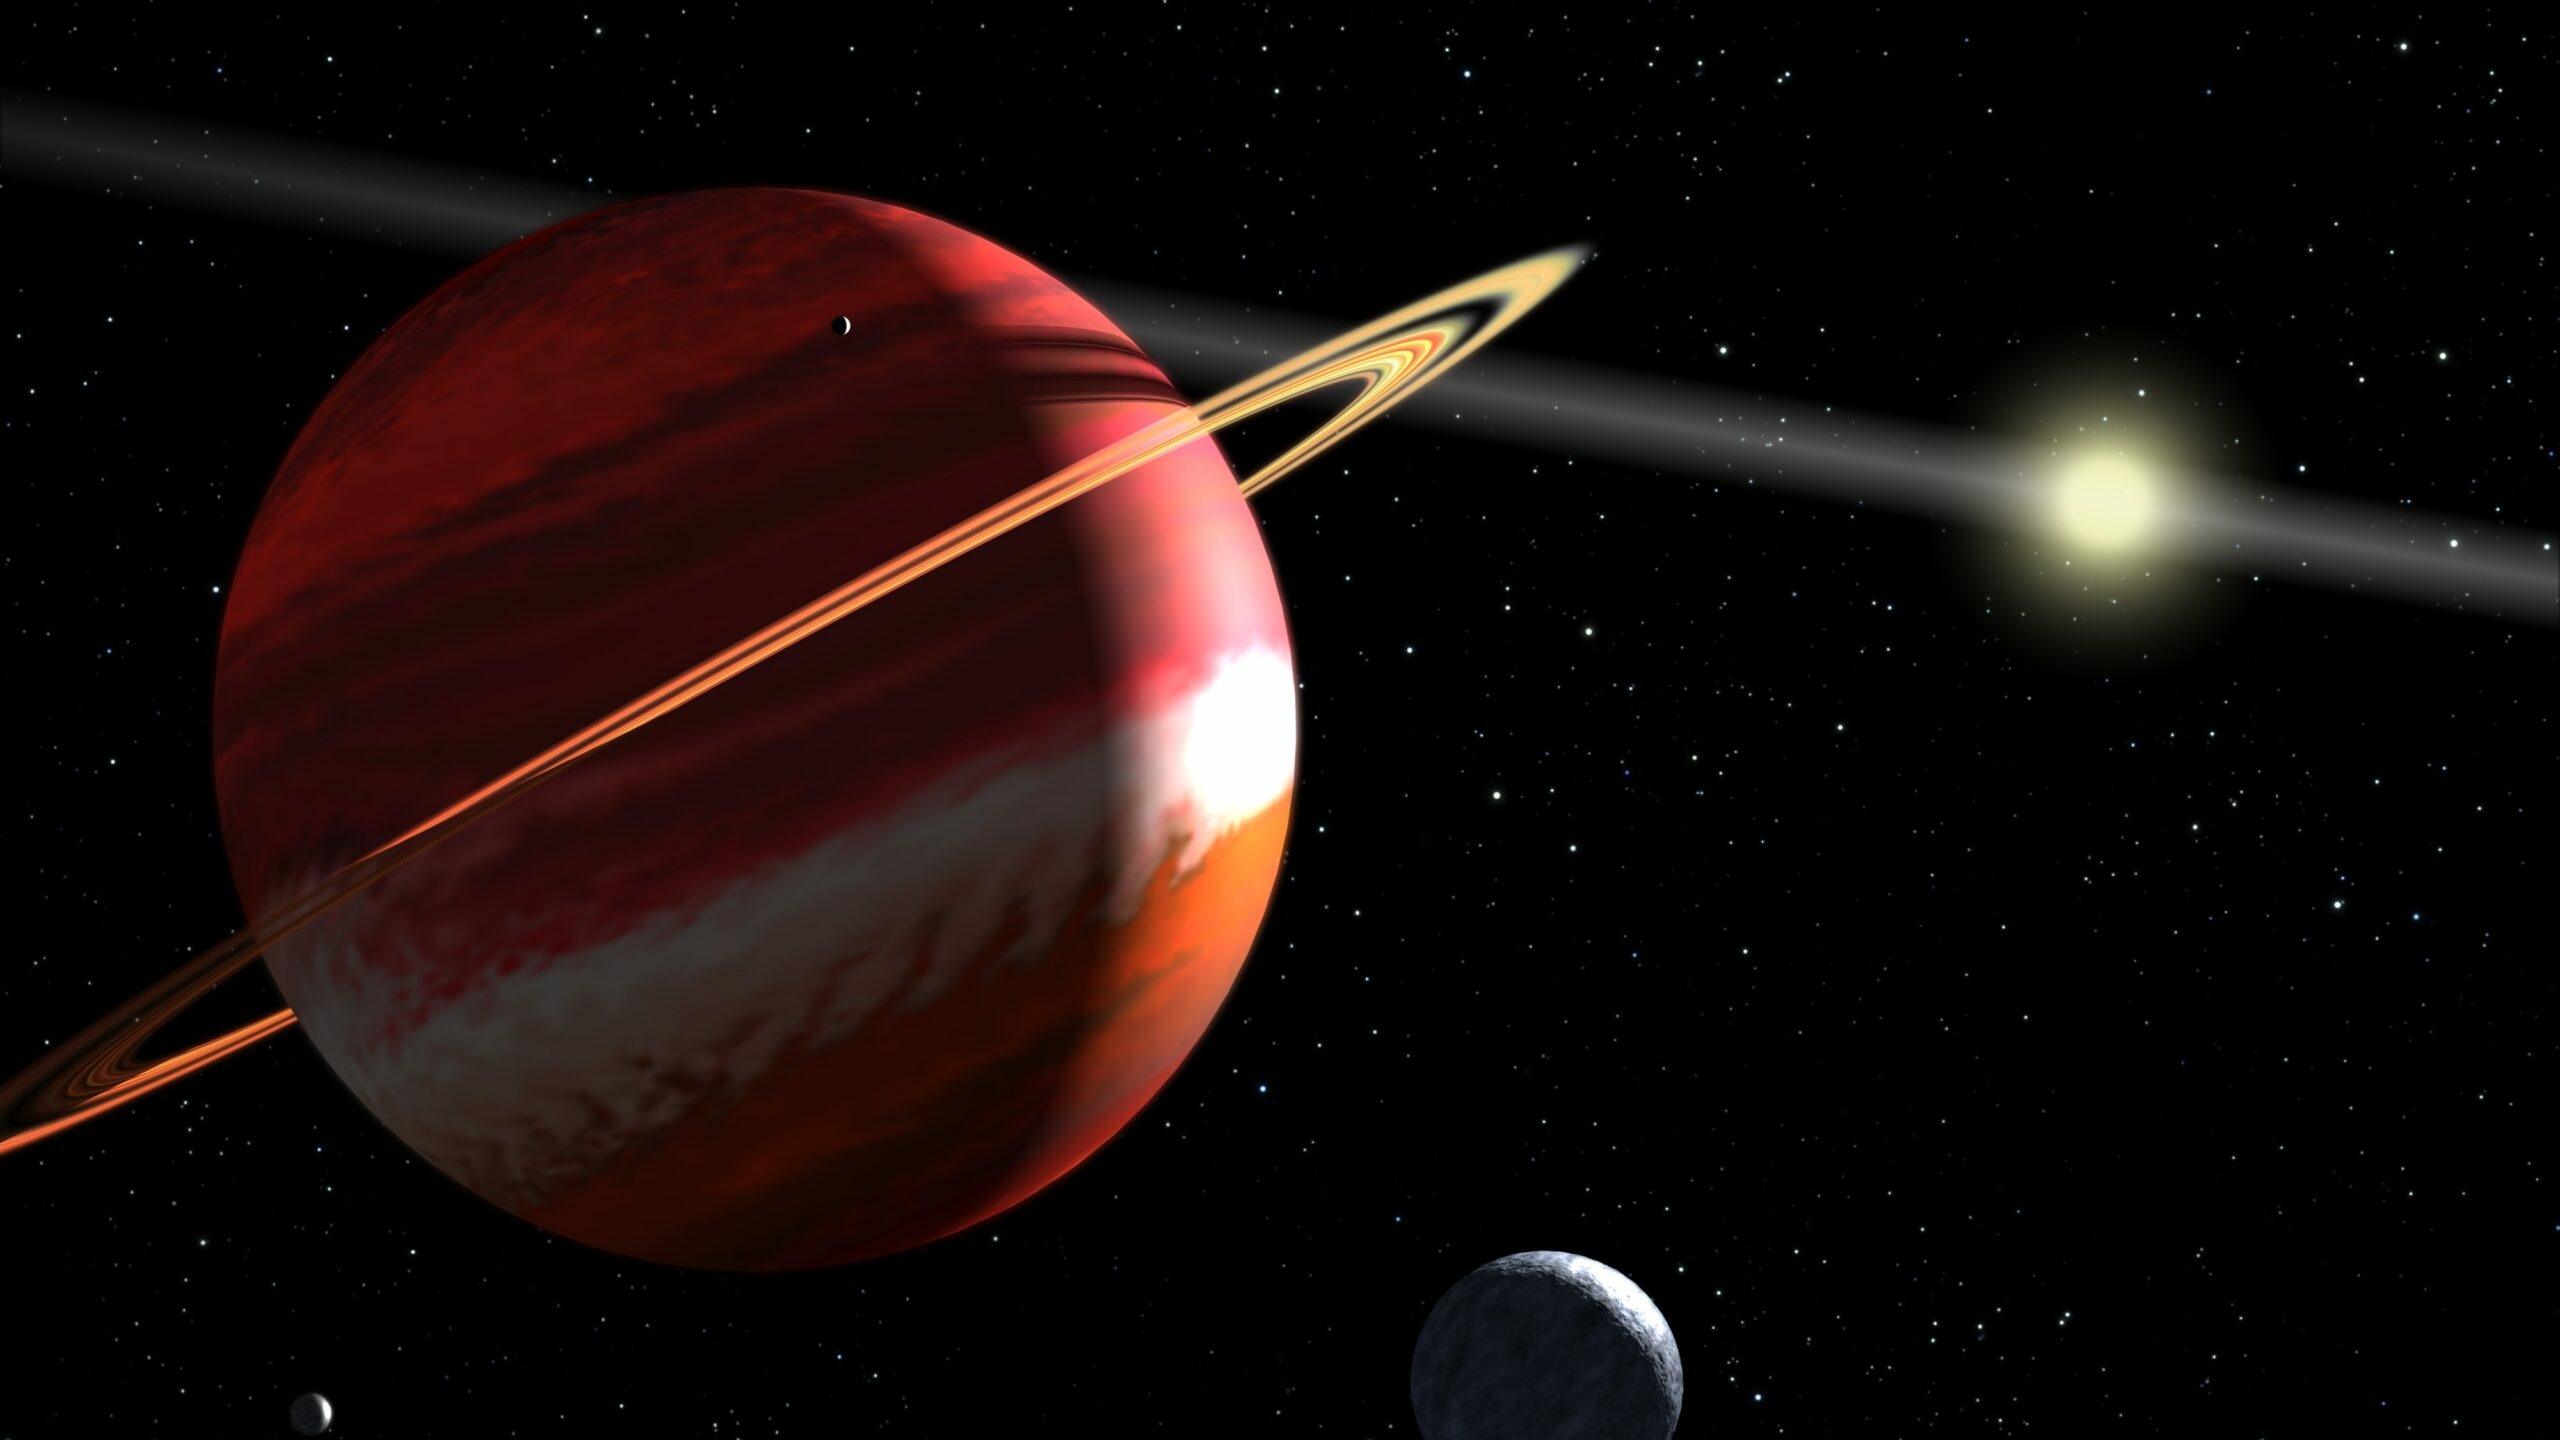 Оказался каннибалом: ученые выяснили, что Юпитер «съел» несколько планет